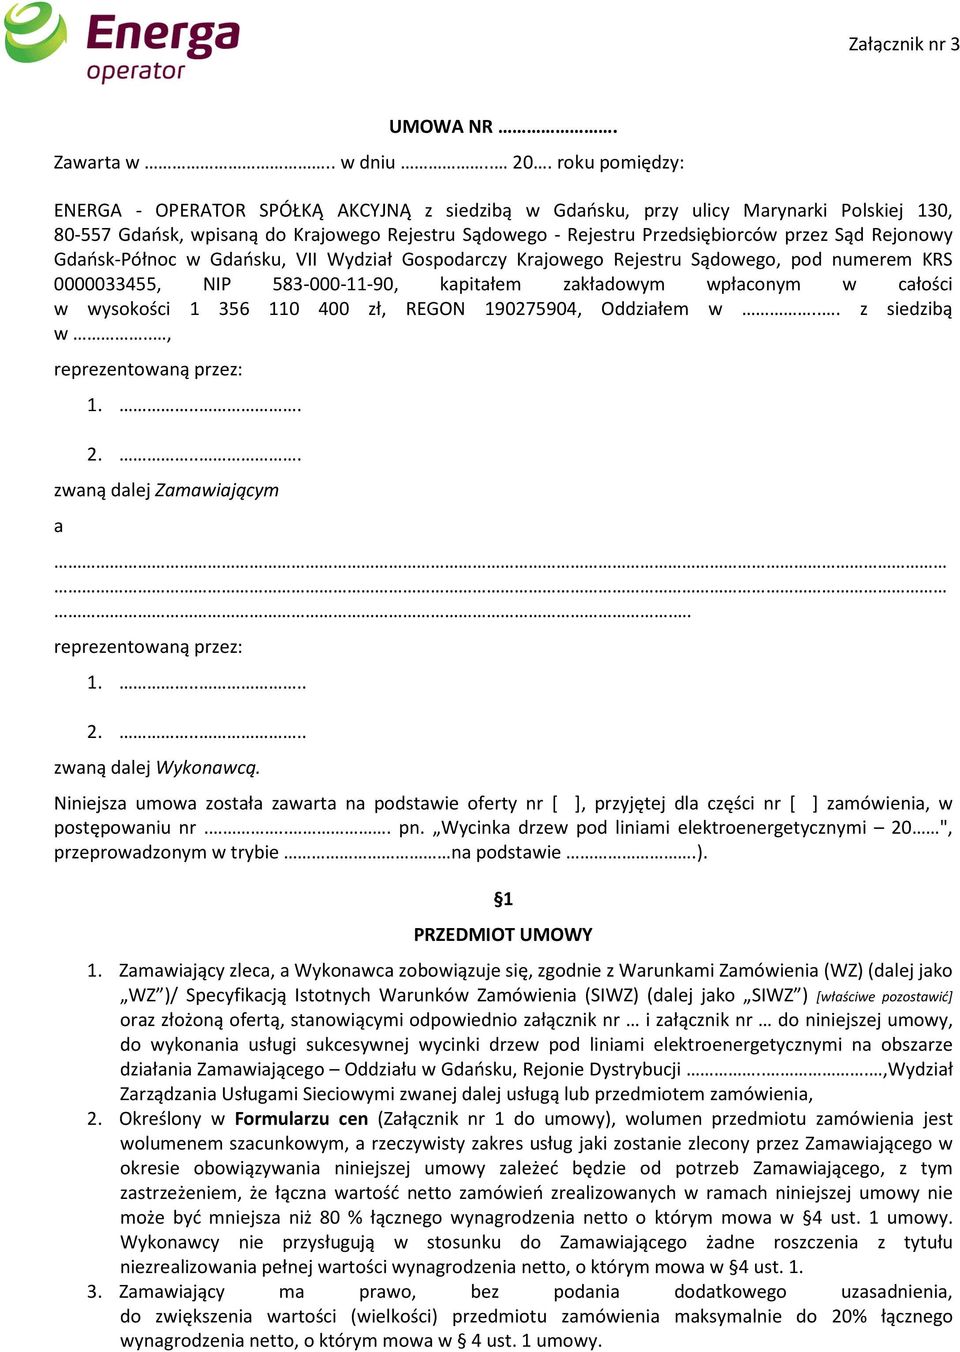 Ogłoszenie nr 527/U/15/Oddział Gdańsk o przetargach nieograniczonych na  wykonanie usług - PDF Darmowe pobieranie